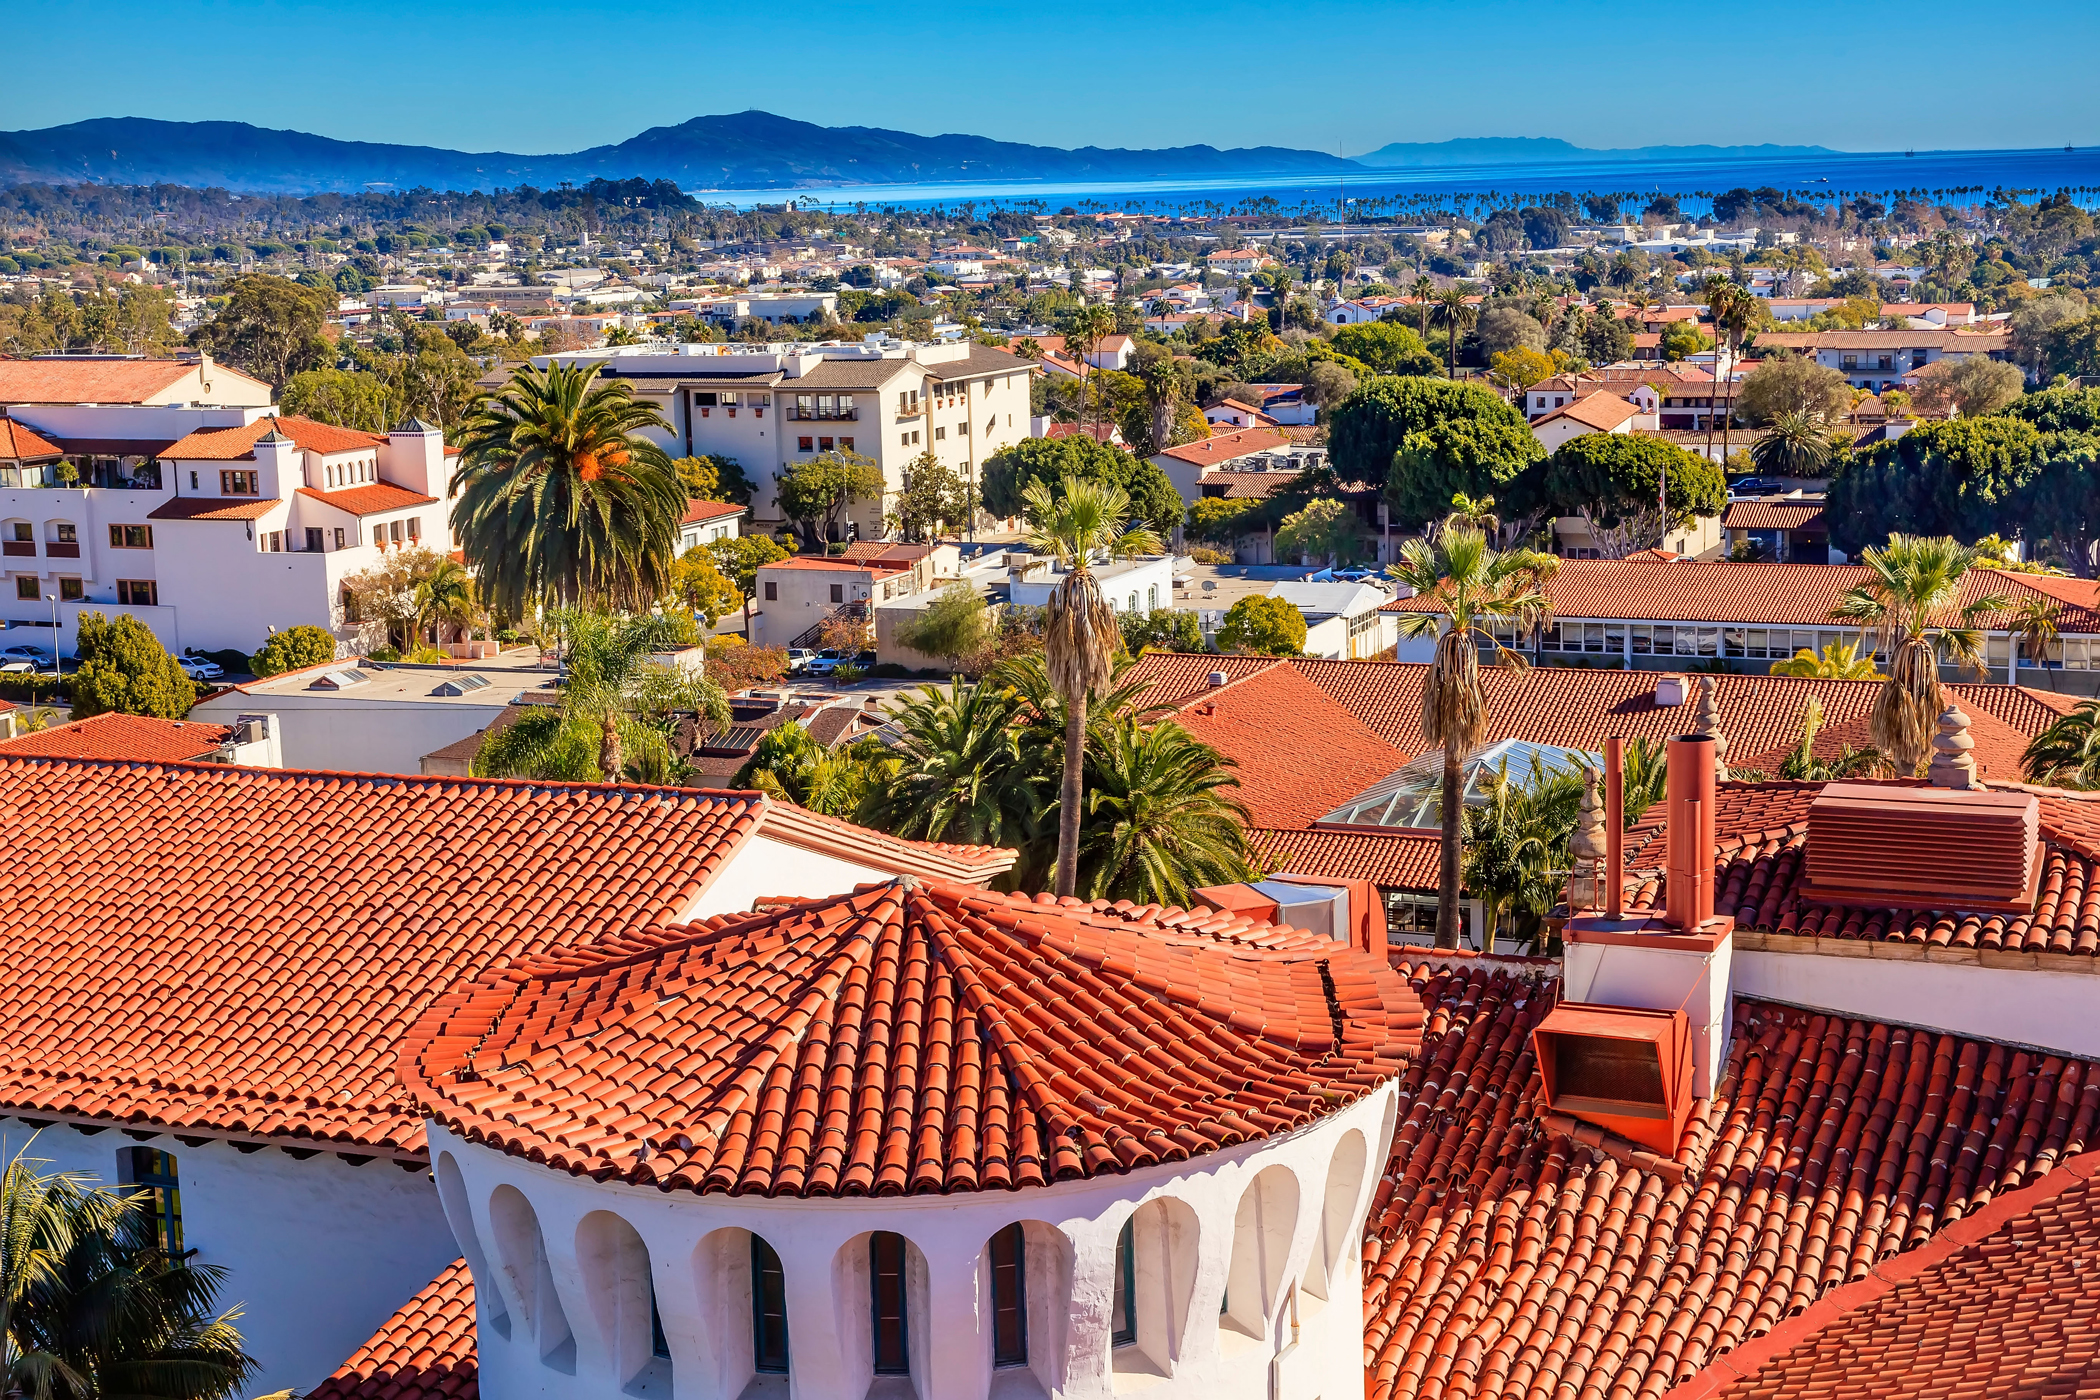 1. Santa Barbara, Calif.
                            Pop.: 91,205 | Median Home Price: $791,500 | Home Price Increase: 42%